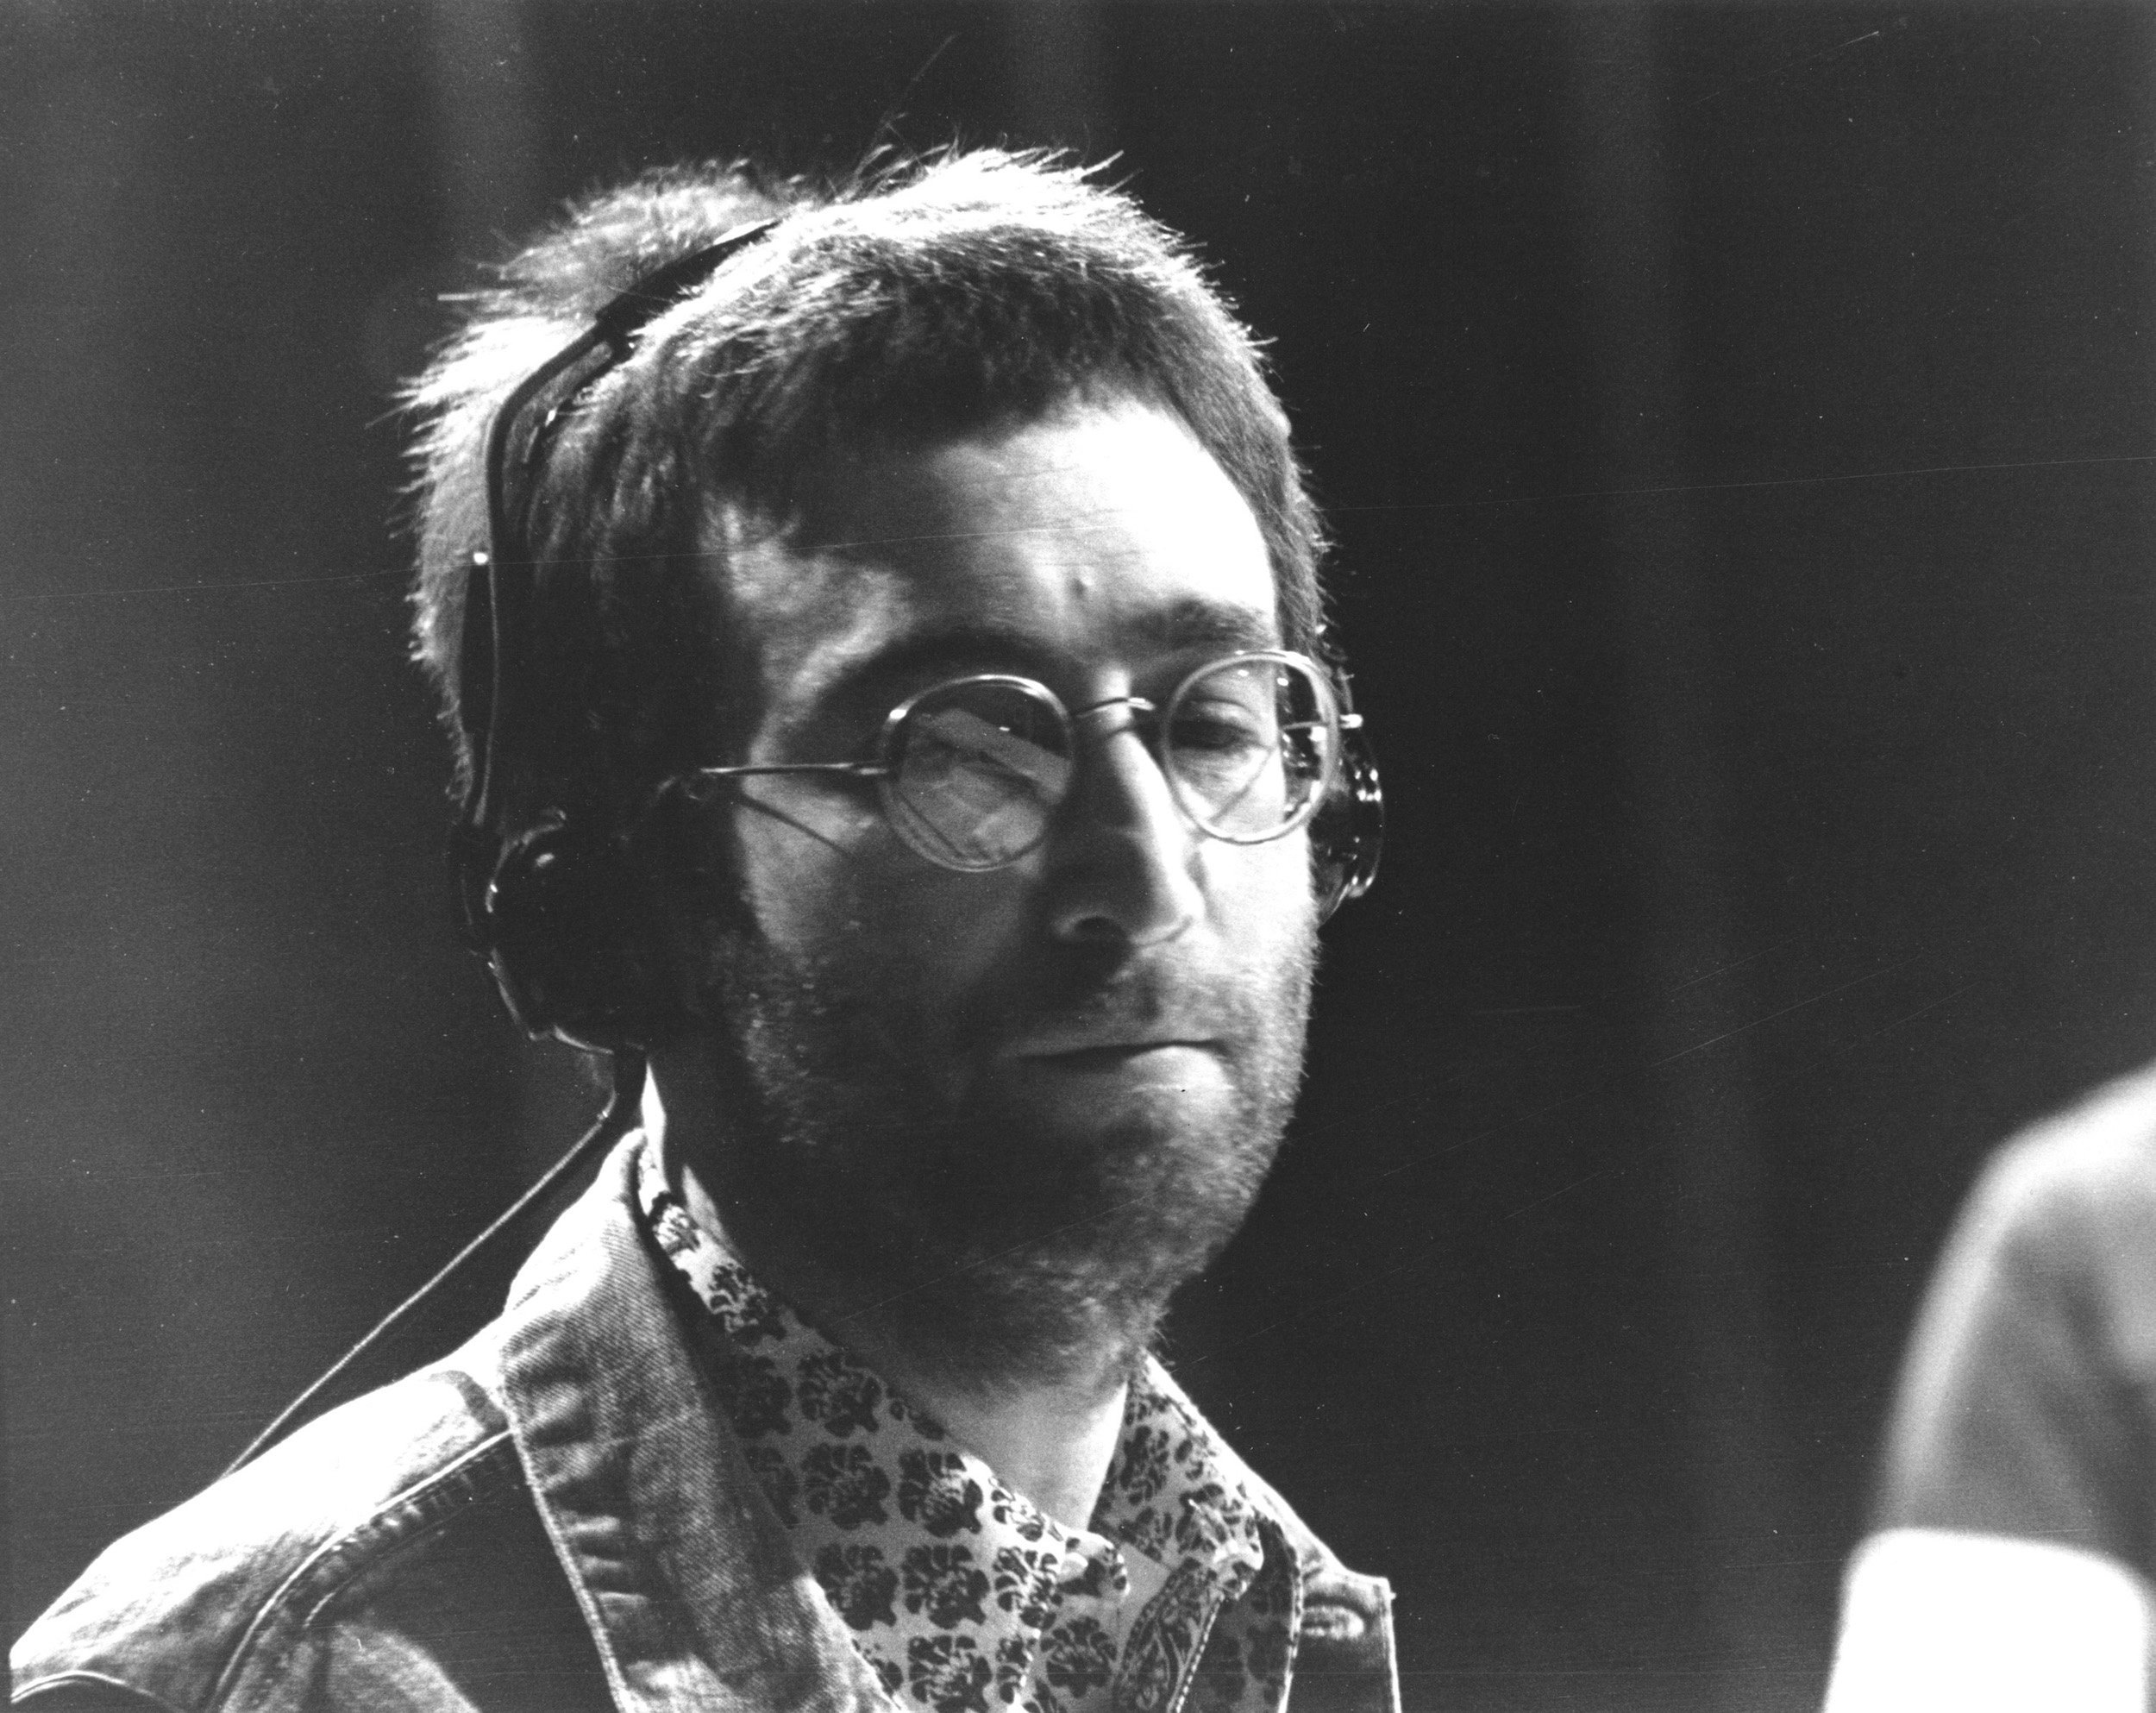 John Lennon of The Beatles on 'Top of the Pops'